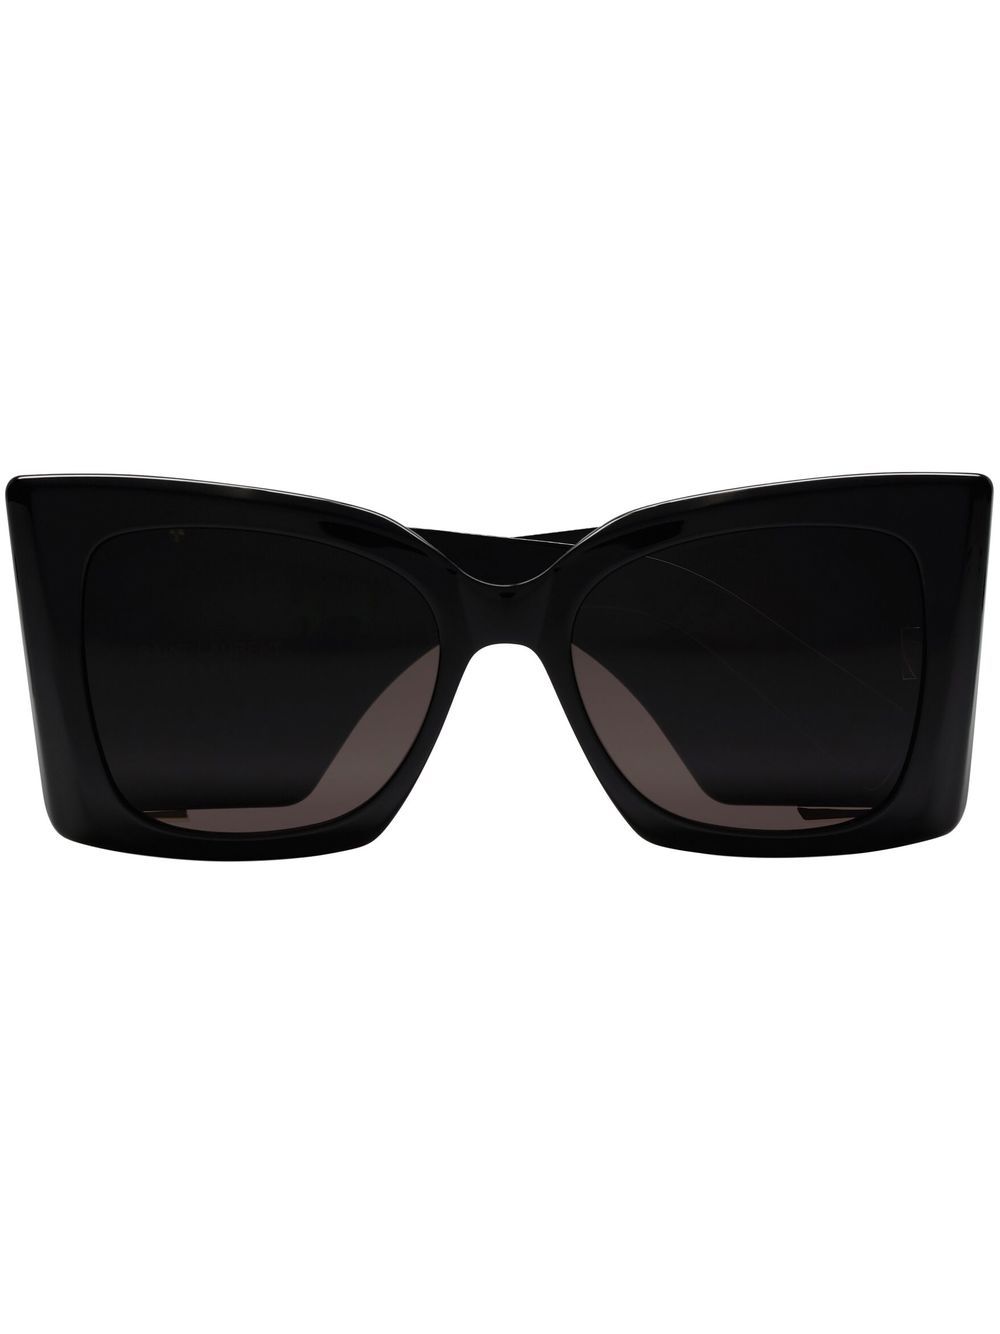 超大框架黑色太陽眼鏡，綠色鏡片，適合女性穿戴- 可持續時尚SS24